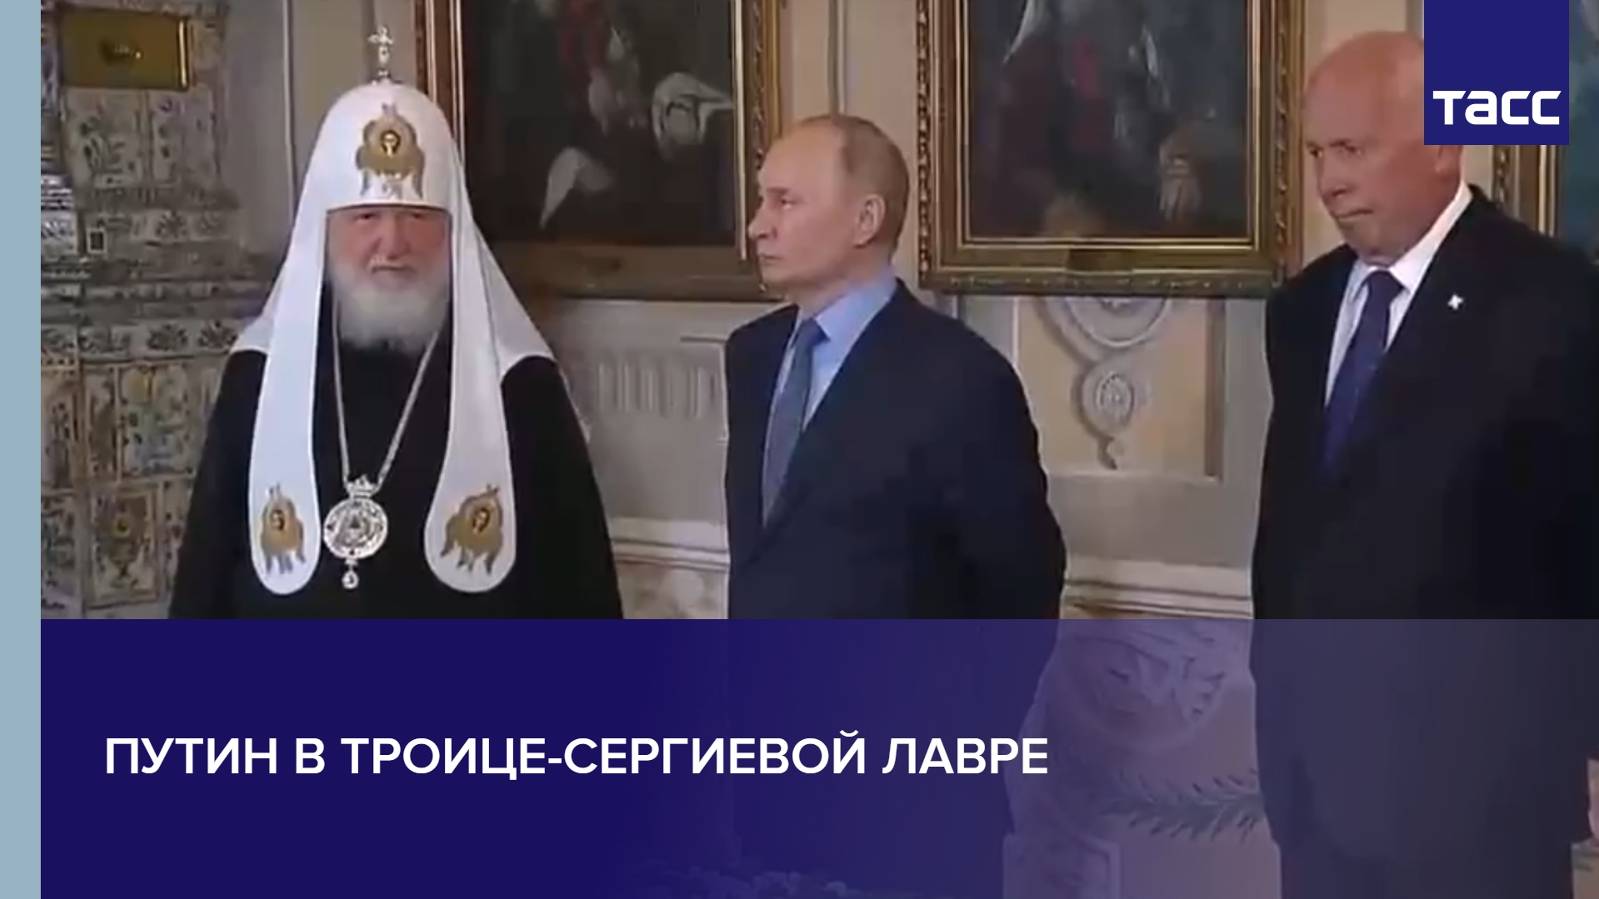 Путин в Троице-Сергиевой лавре